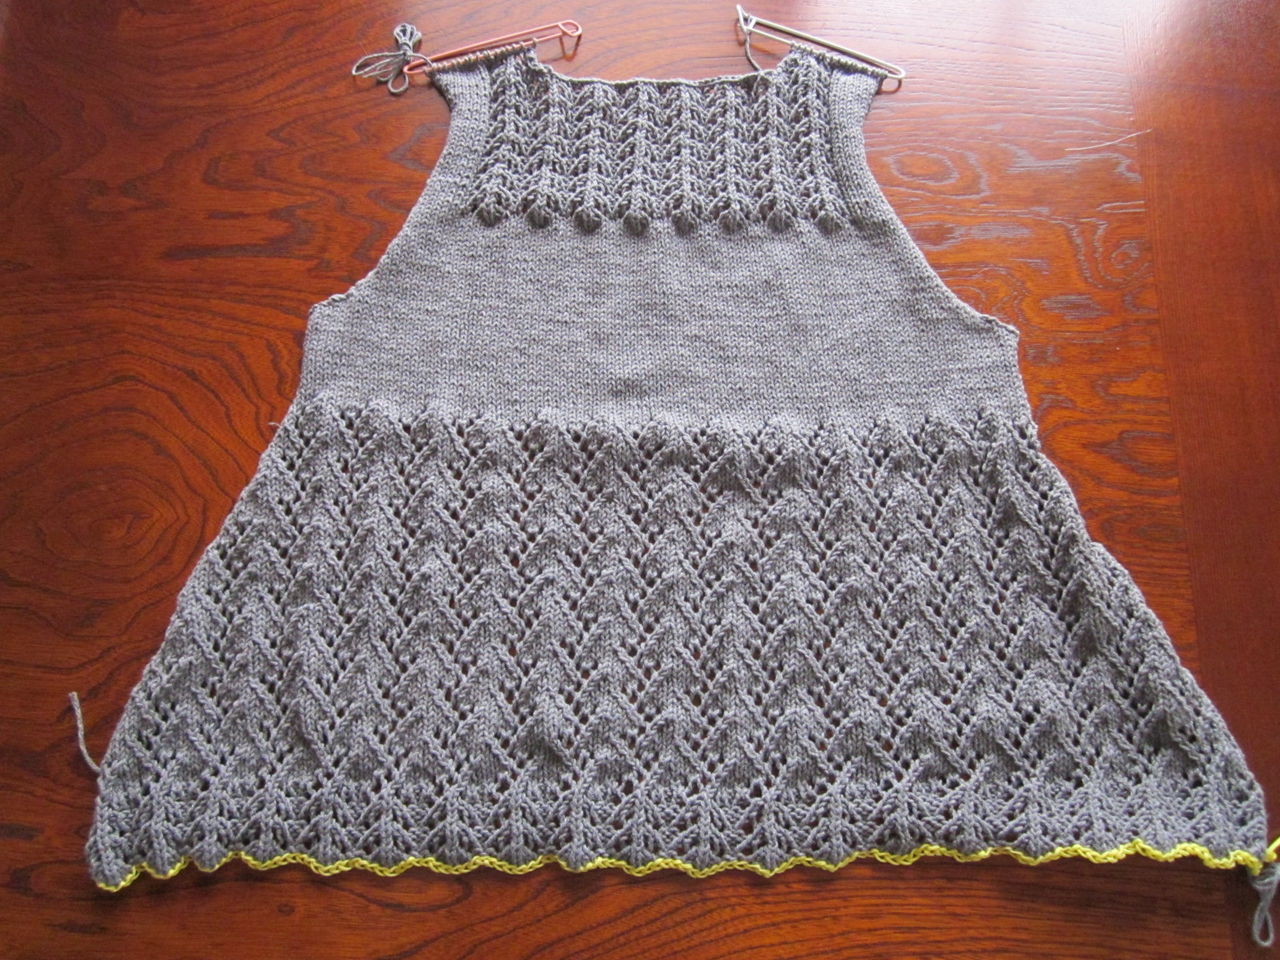 コットンの糸で編む今着たいニット」から「透かし編みのカーディガン